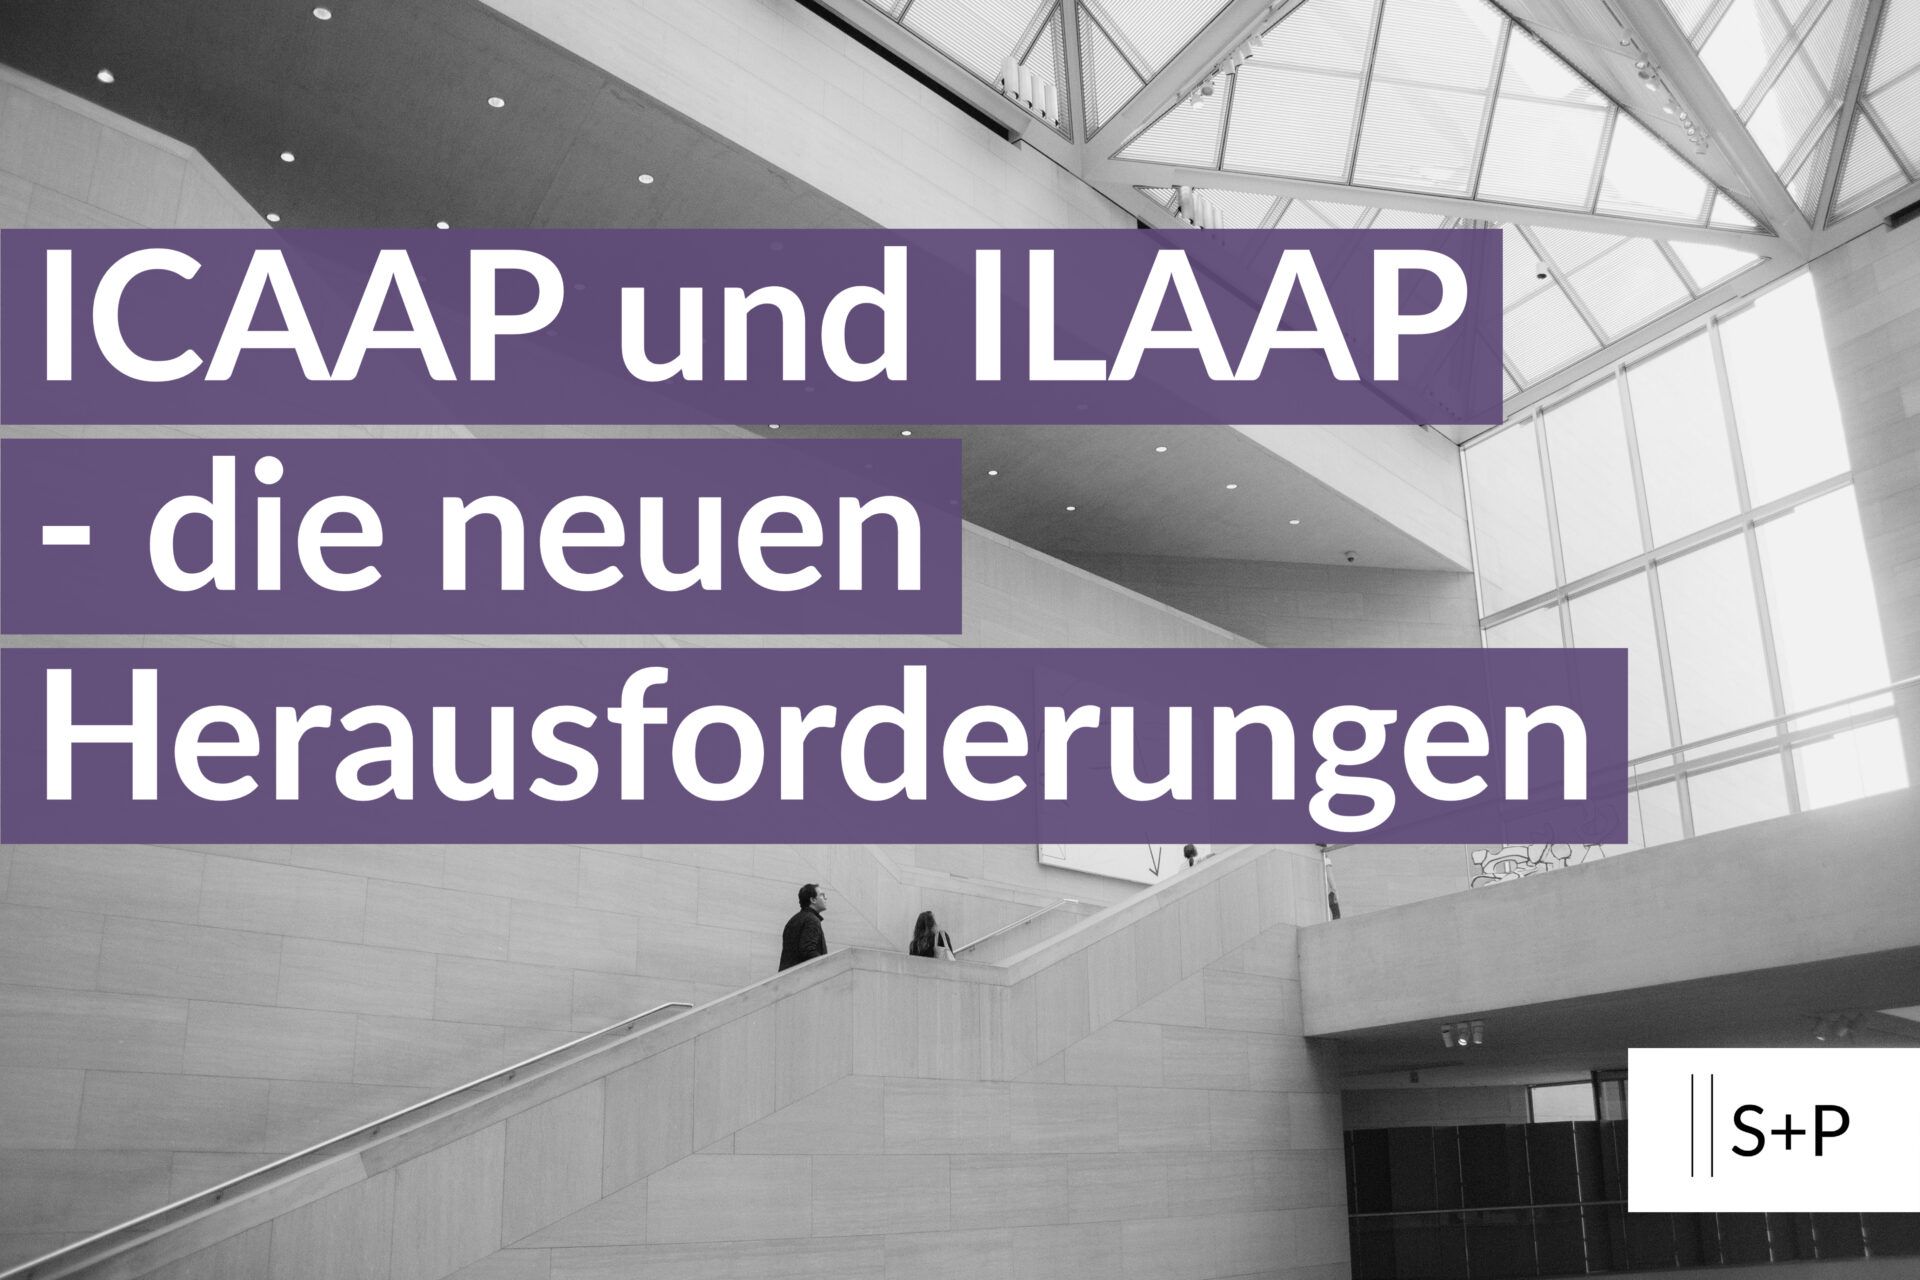 Seminar ICAAP und ILAAP - die neuen Herausforderungen